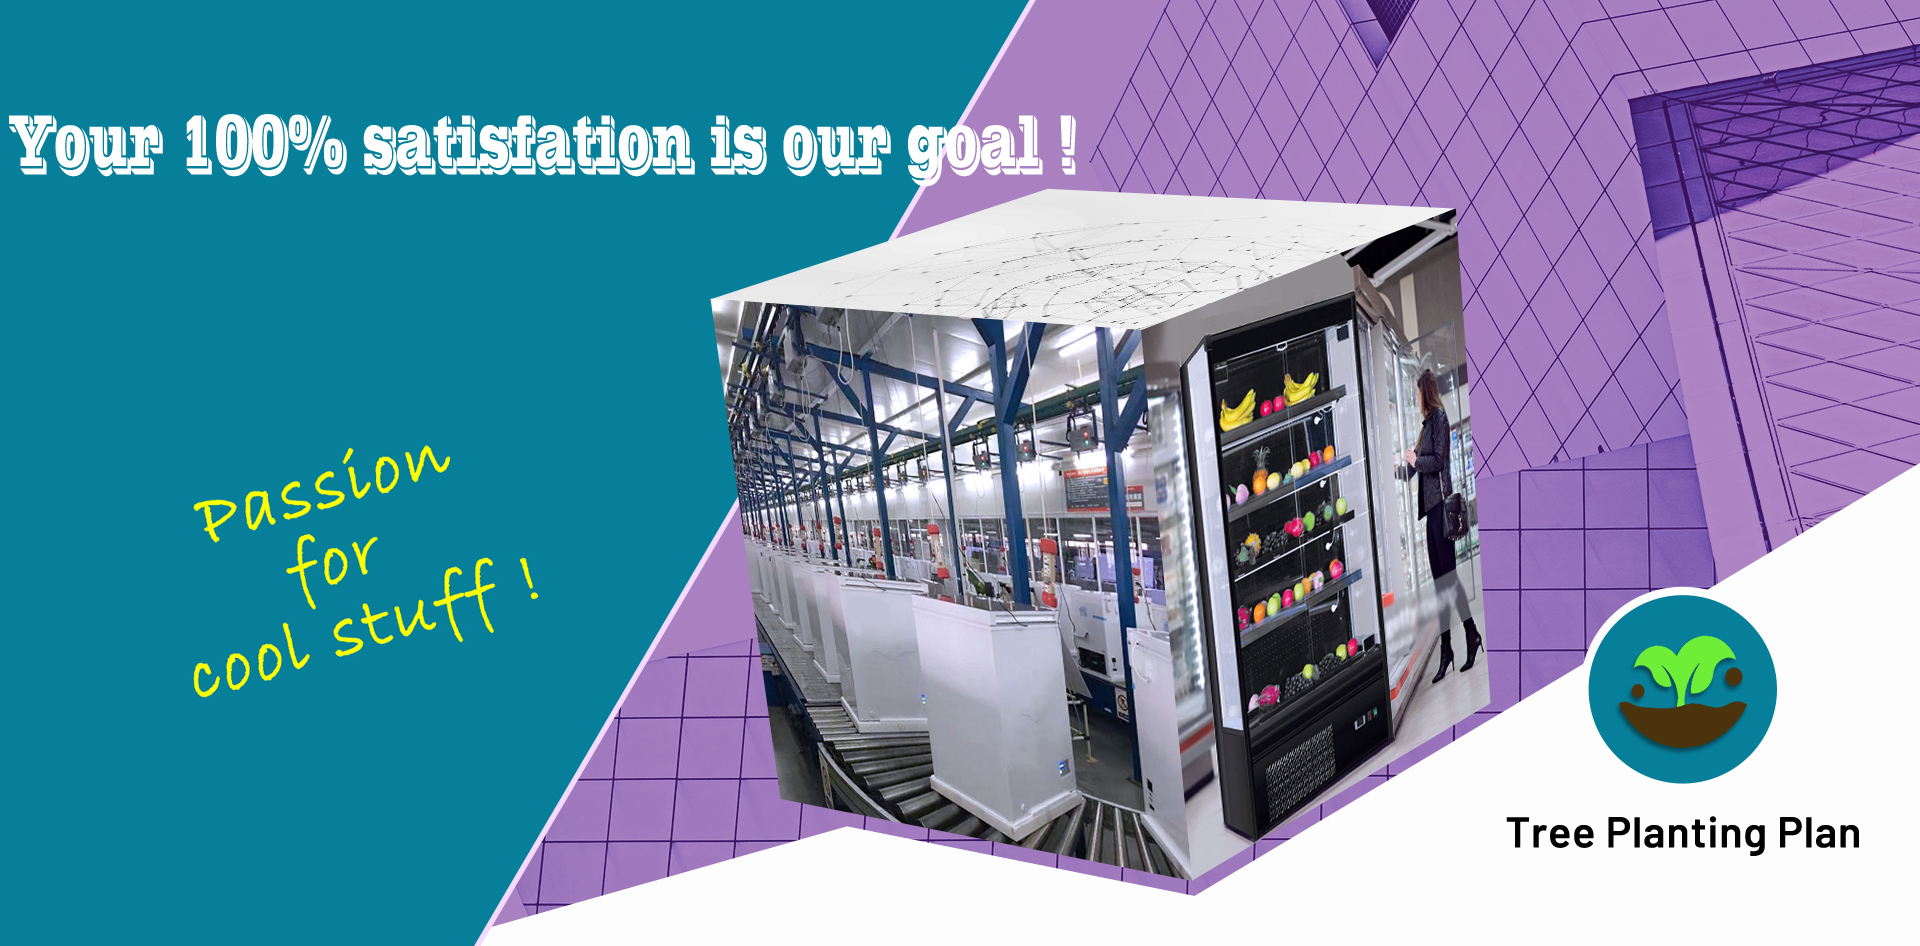 Nhà sản xuất OEM tủ lạnh thương mại từ Nenwell Trung Quốc, một nhà máy sản xuất tủ lạnh thương mại